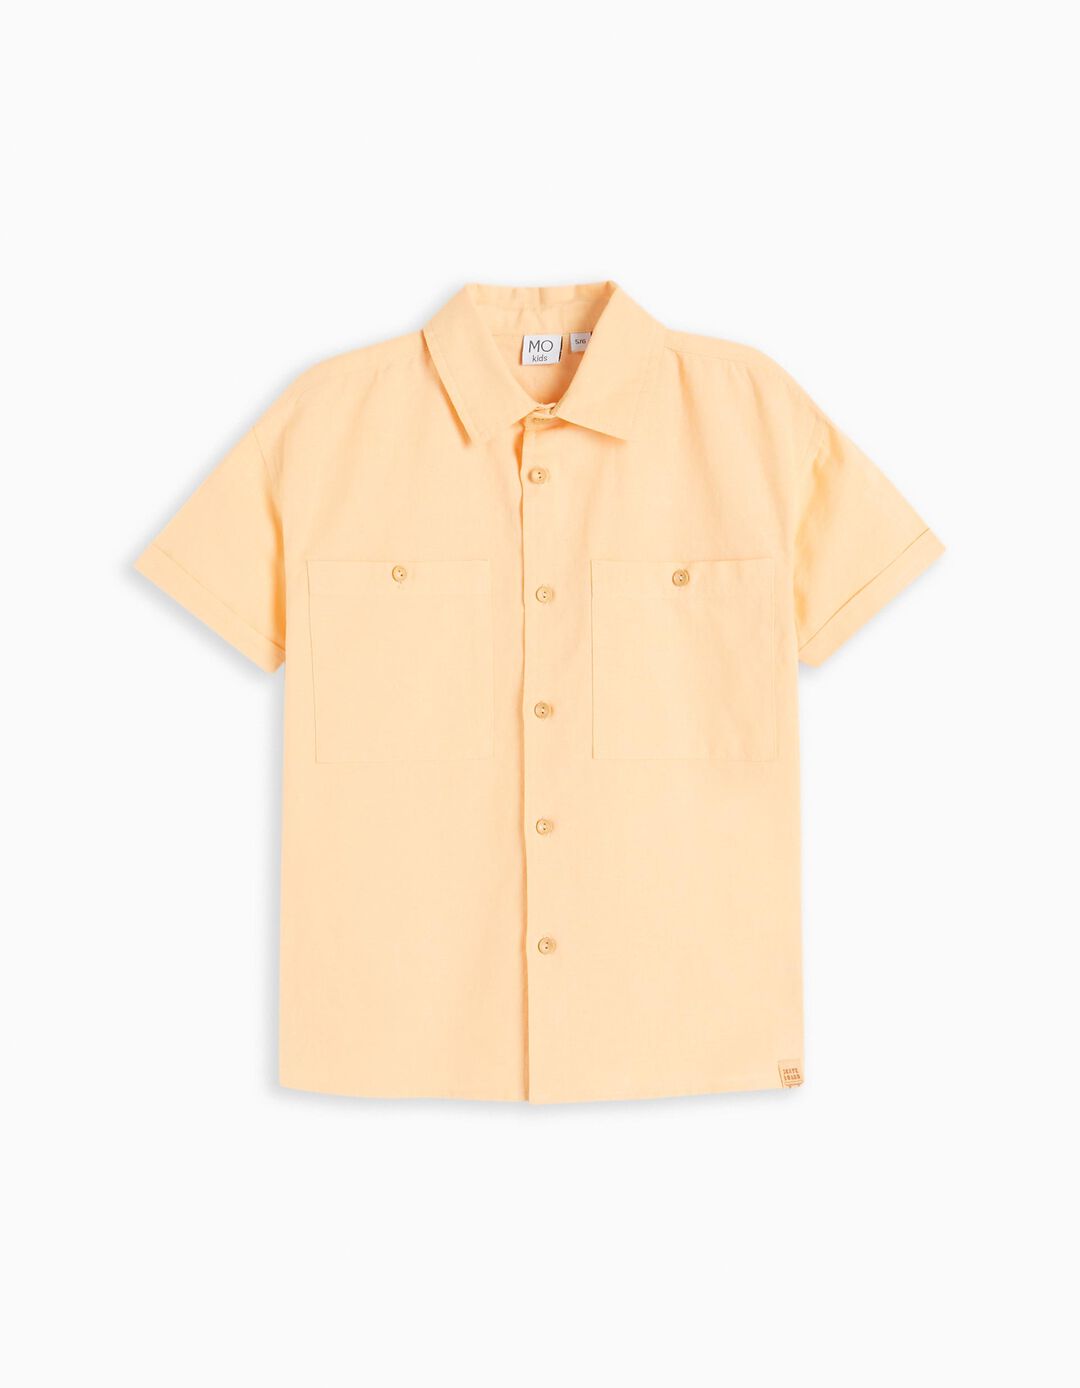 Linen Blend Shirt, Boys, Light Yellow